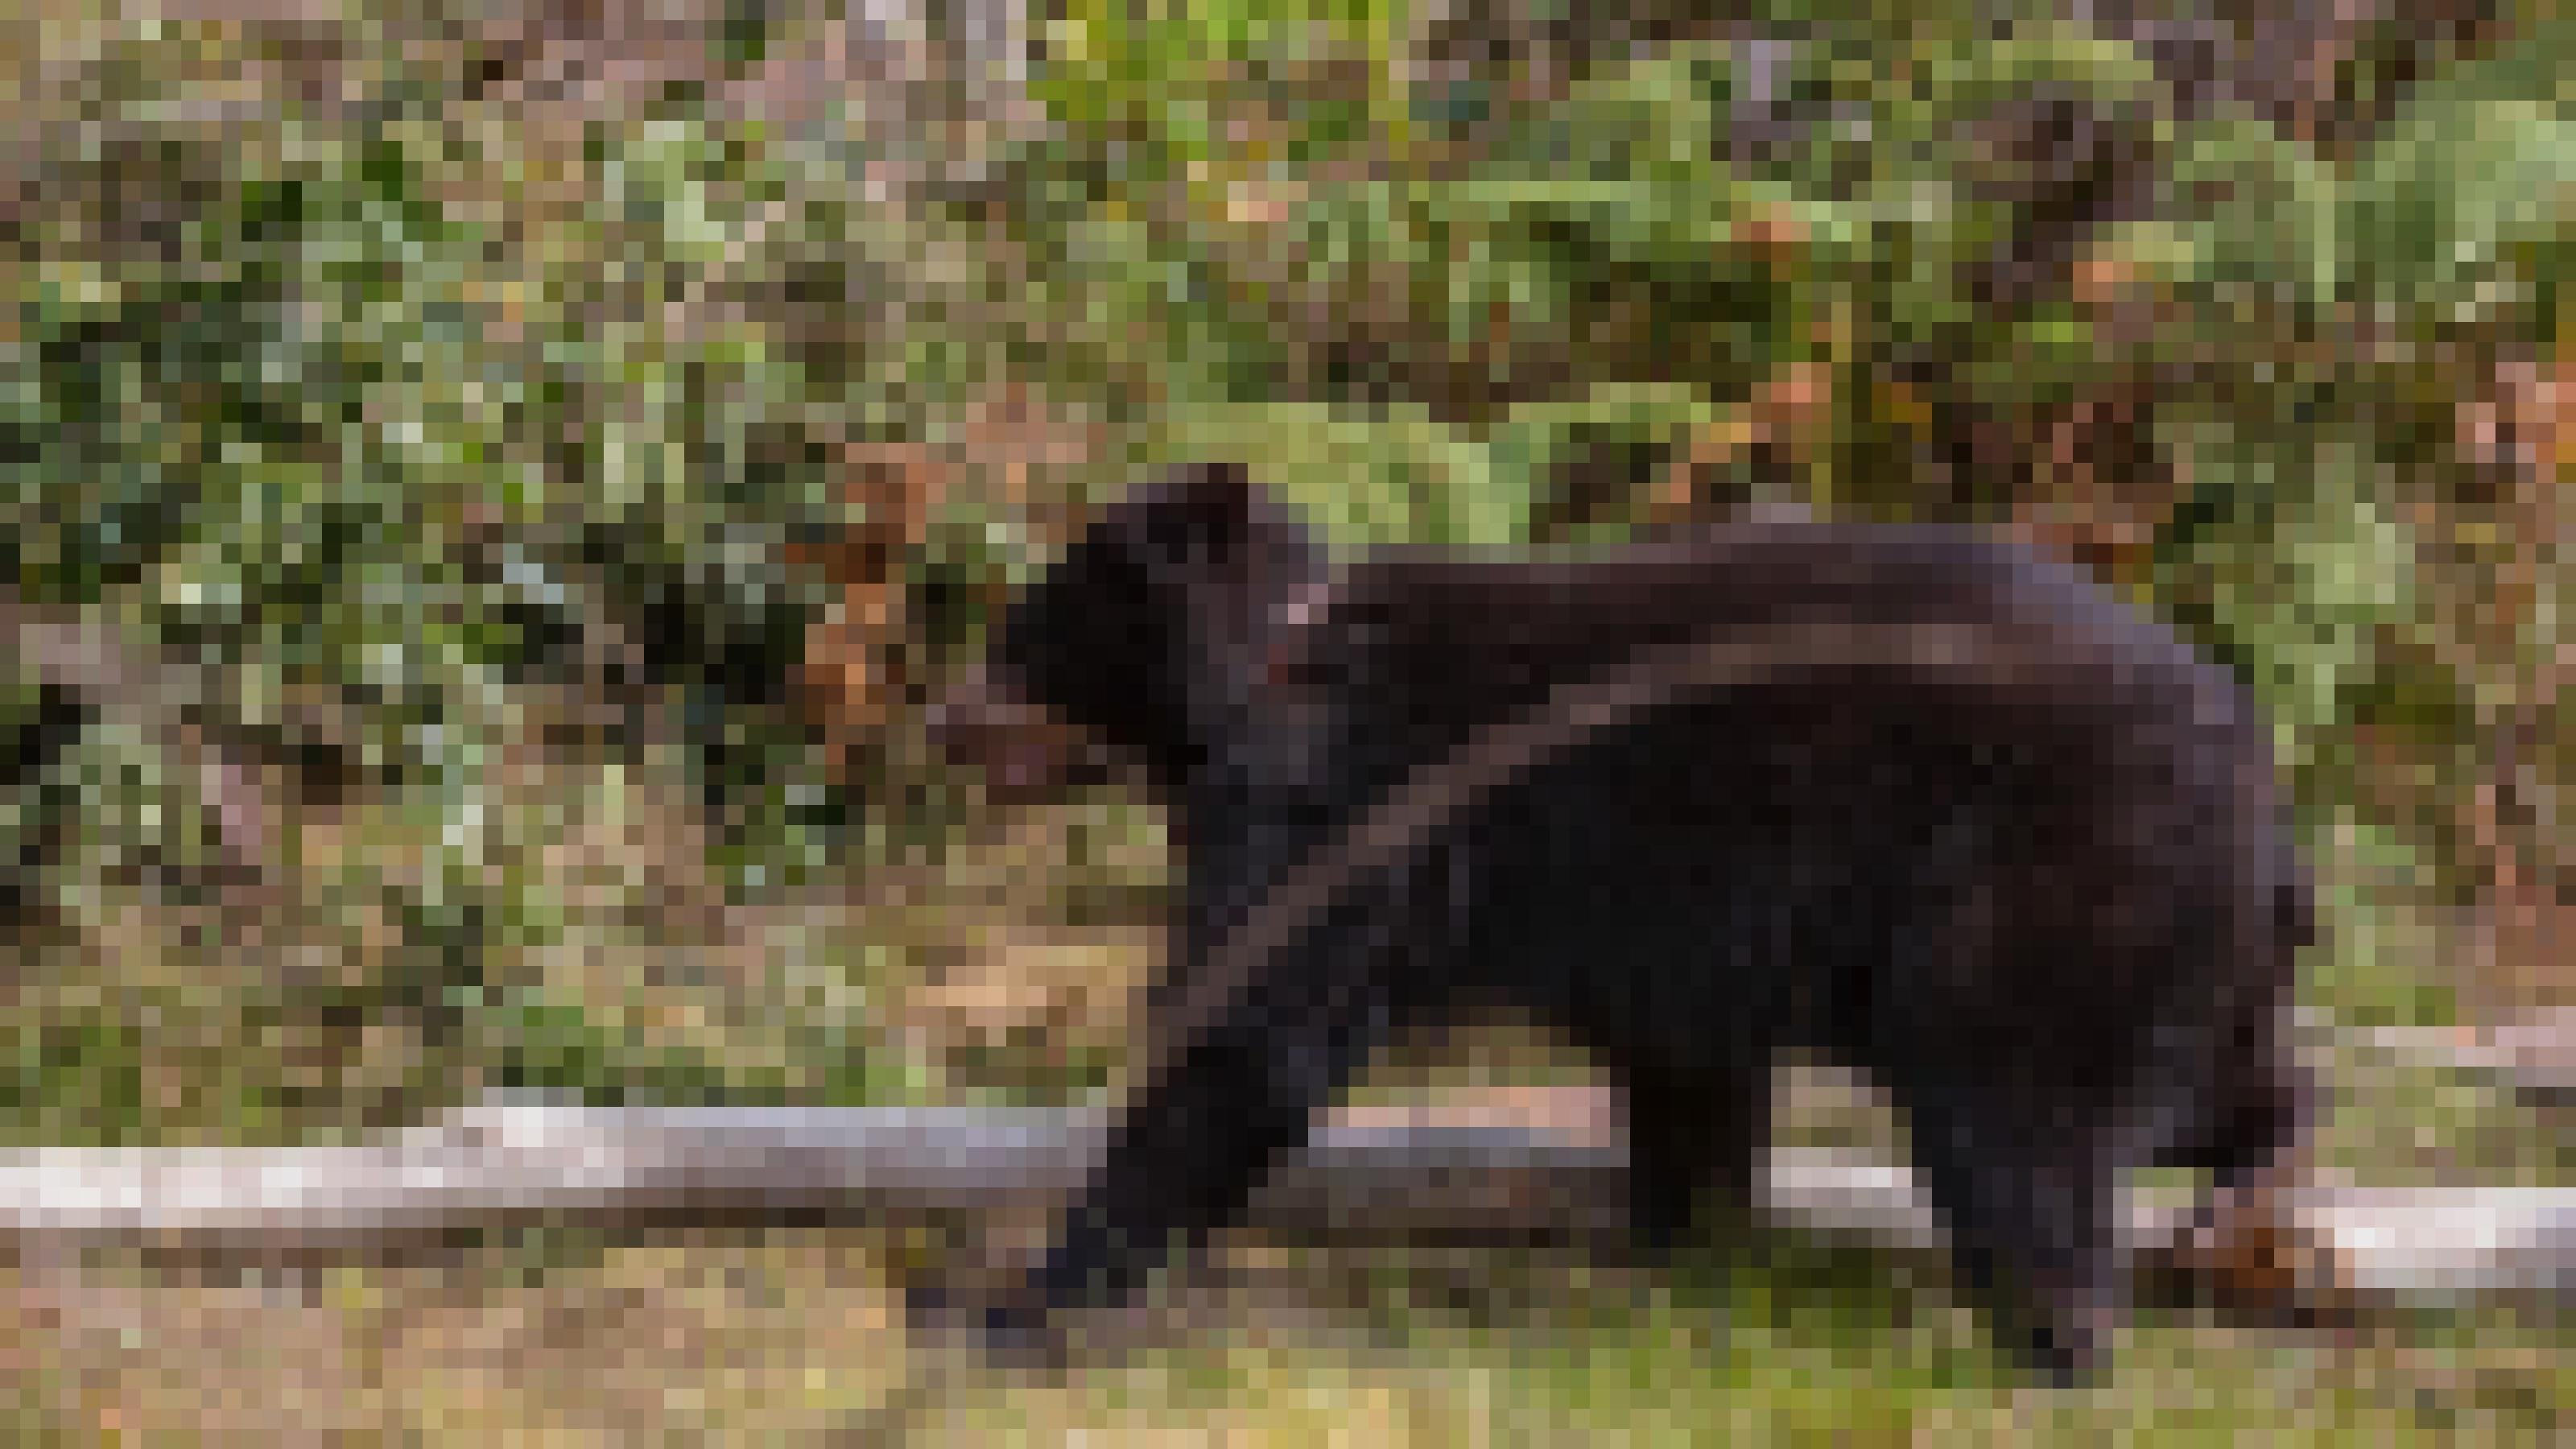 Ein offenbar noch junger, weil struppiger Bär läuft durchs Bild. In dem schwarzen Fell sind seine Augen kaum zu erkennen. Er trägt ein Band um den Hals.